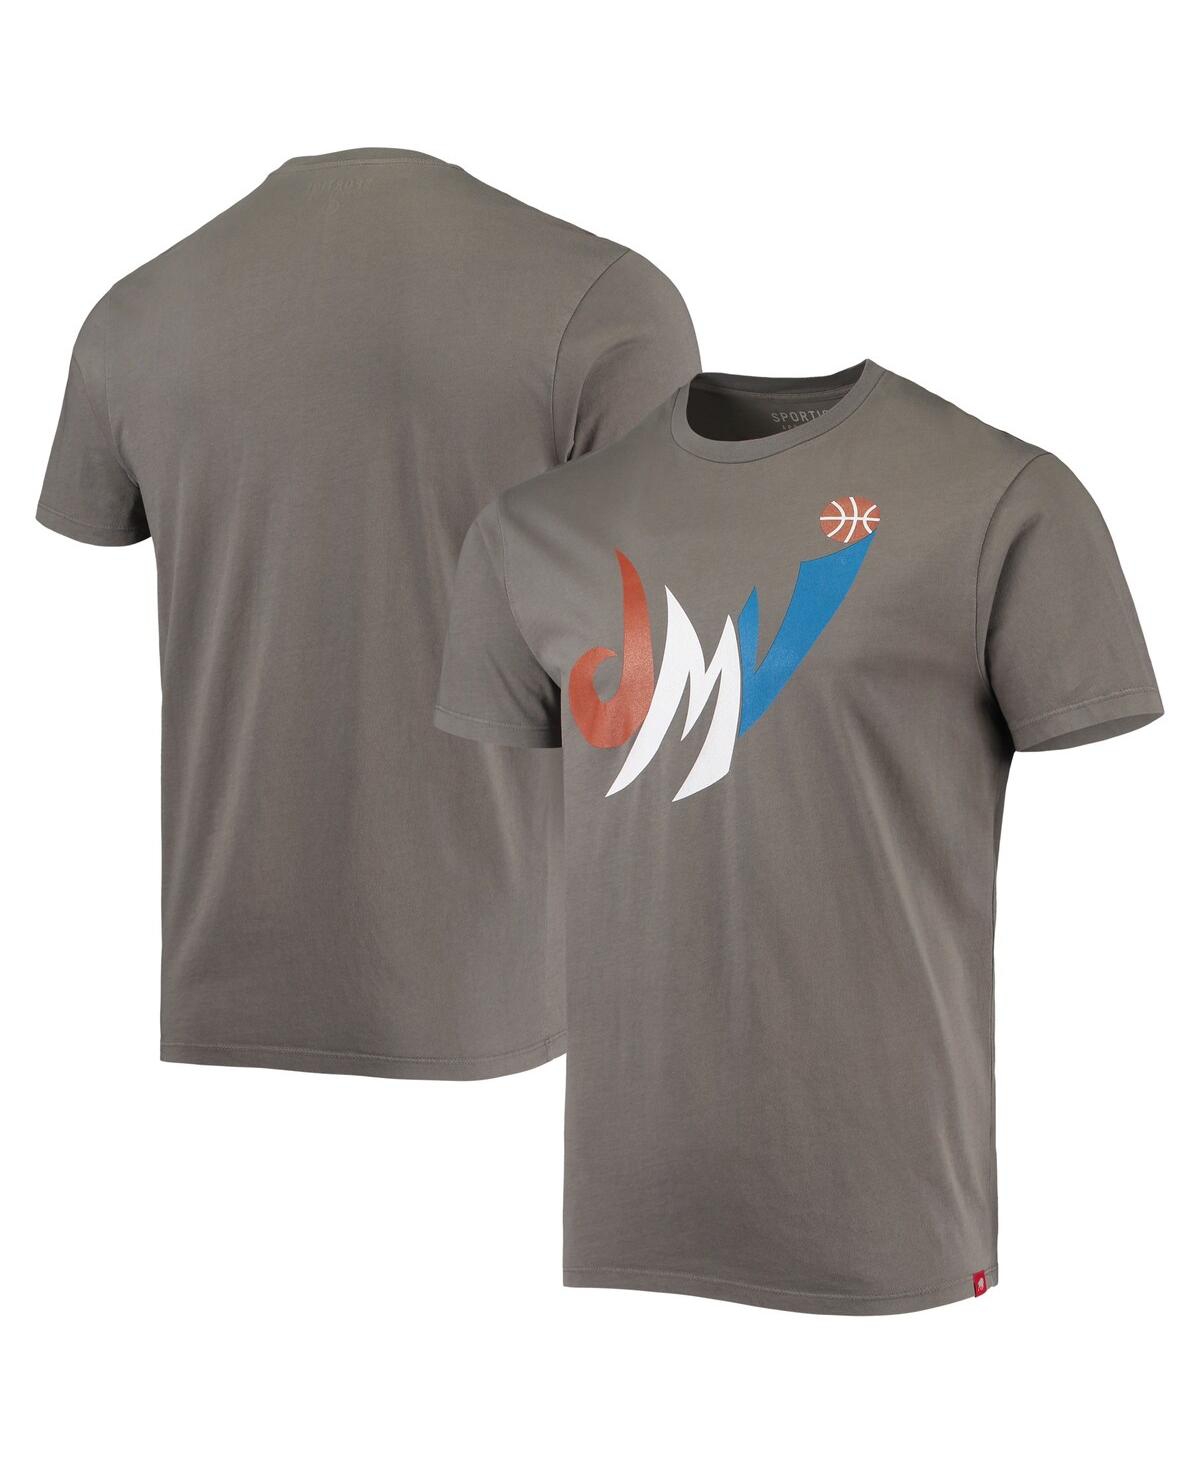 Men's Sportiqe Charcoal Washington Wizards Bingham T-shirt - Charcoal